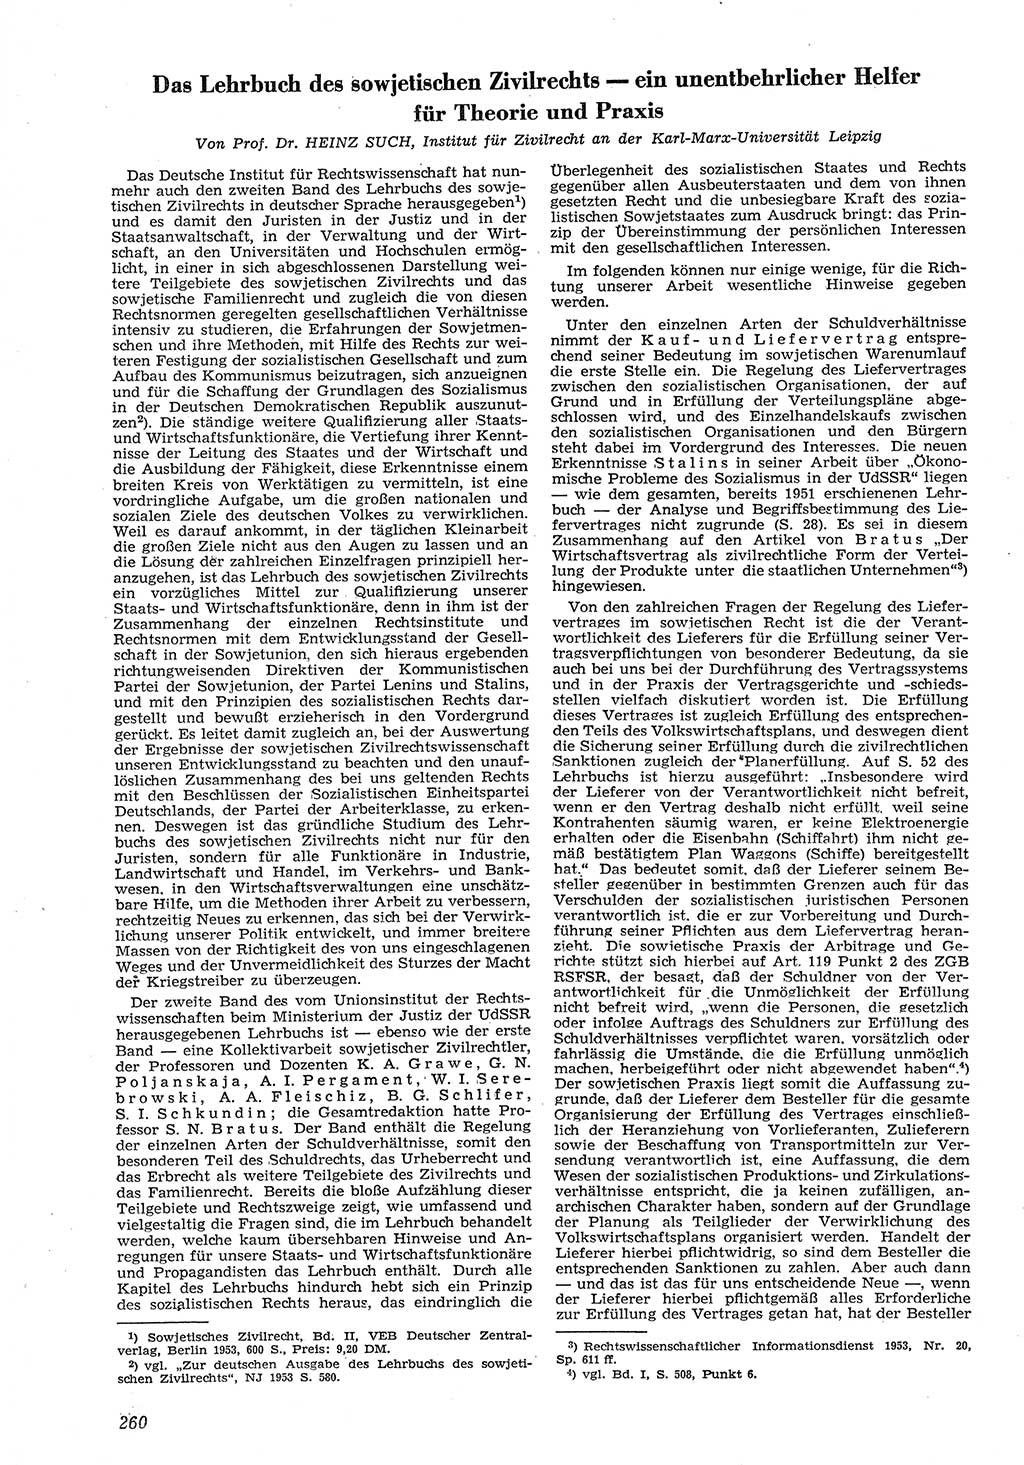 Neue Justiz (NJ), Zeitschrift für Recht und Rechtswissenschaft [Deutsche Demokratische Republik (DDR)], 8. Jahrgang 1954, Seite 260 (NJ DDR 1954, S. 260)